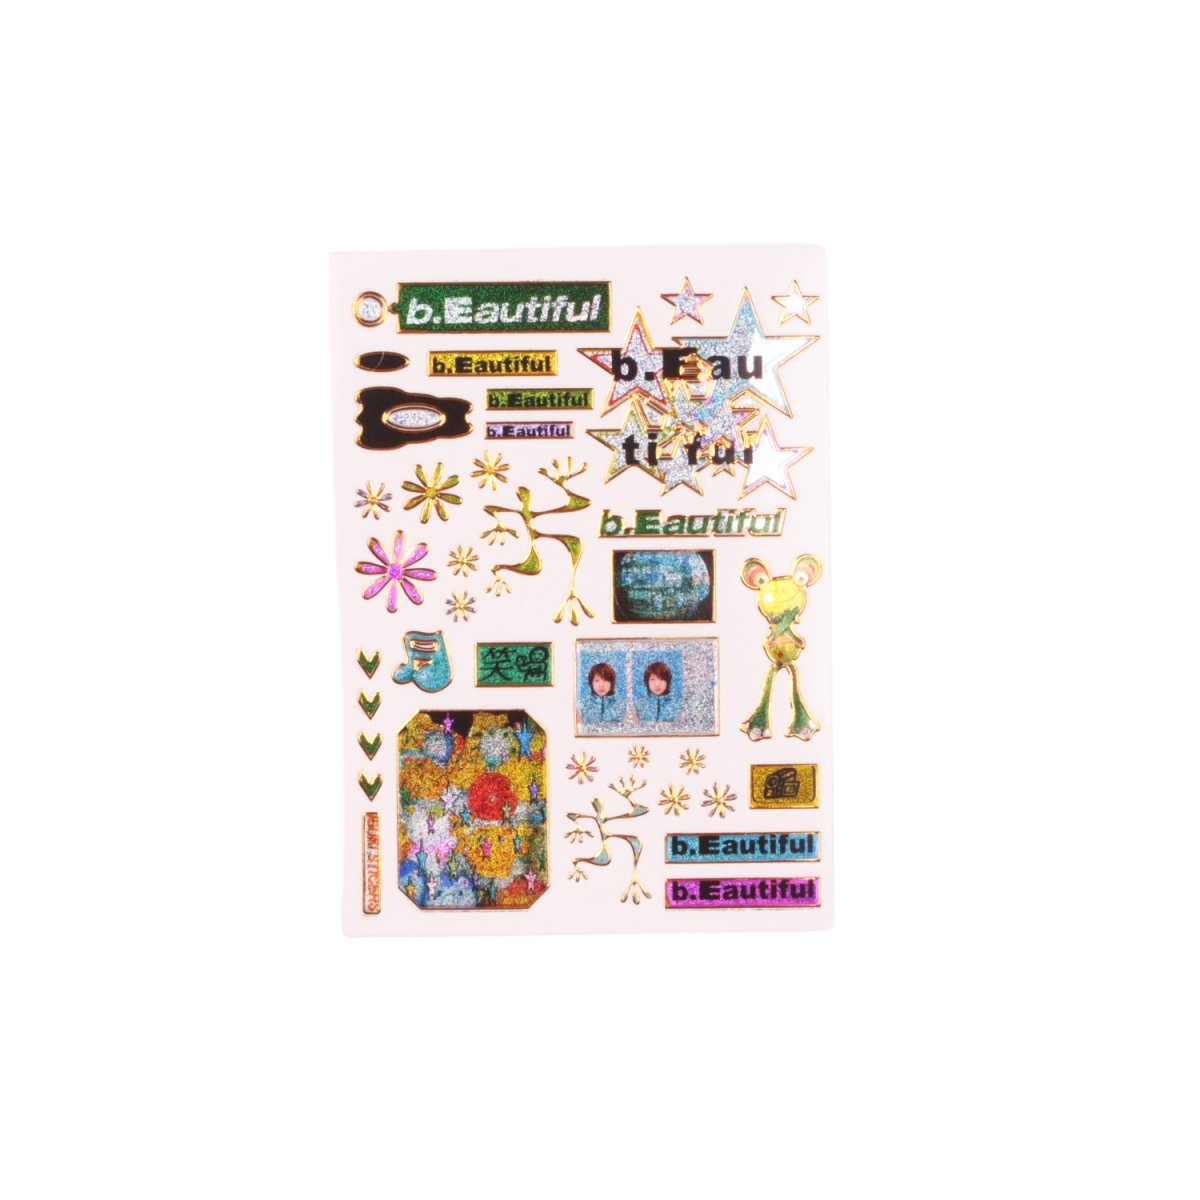  b.Eautiful  Ibuki Sakai Sticker Sheet